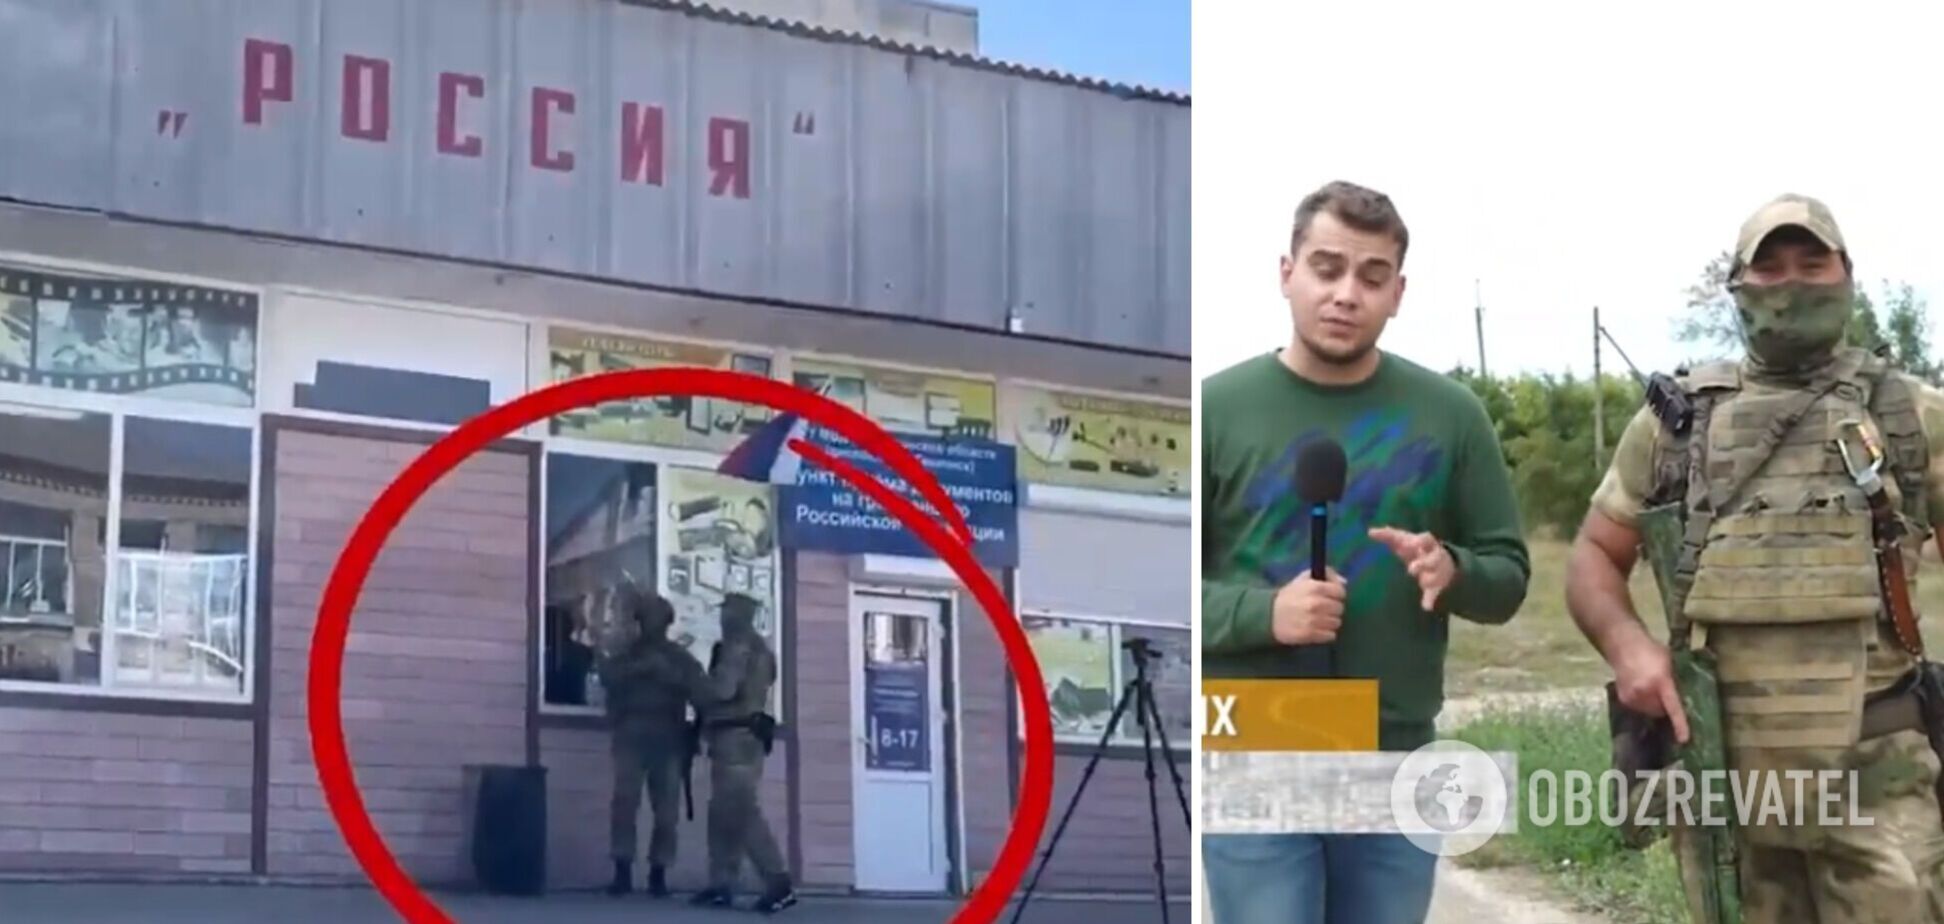 Російські фейкові вибори на українських тимчасово окупованих територіях - нікчемні